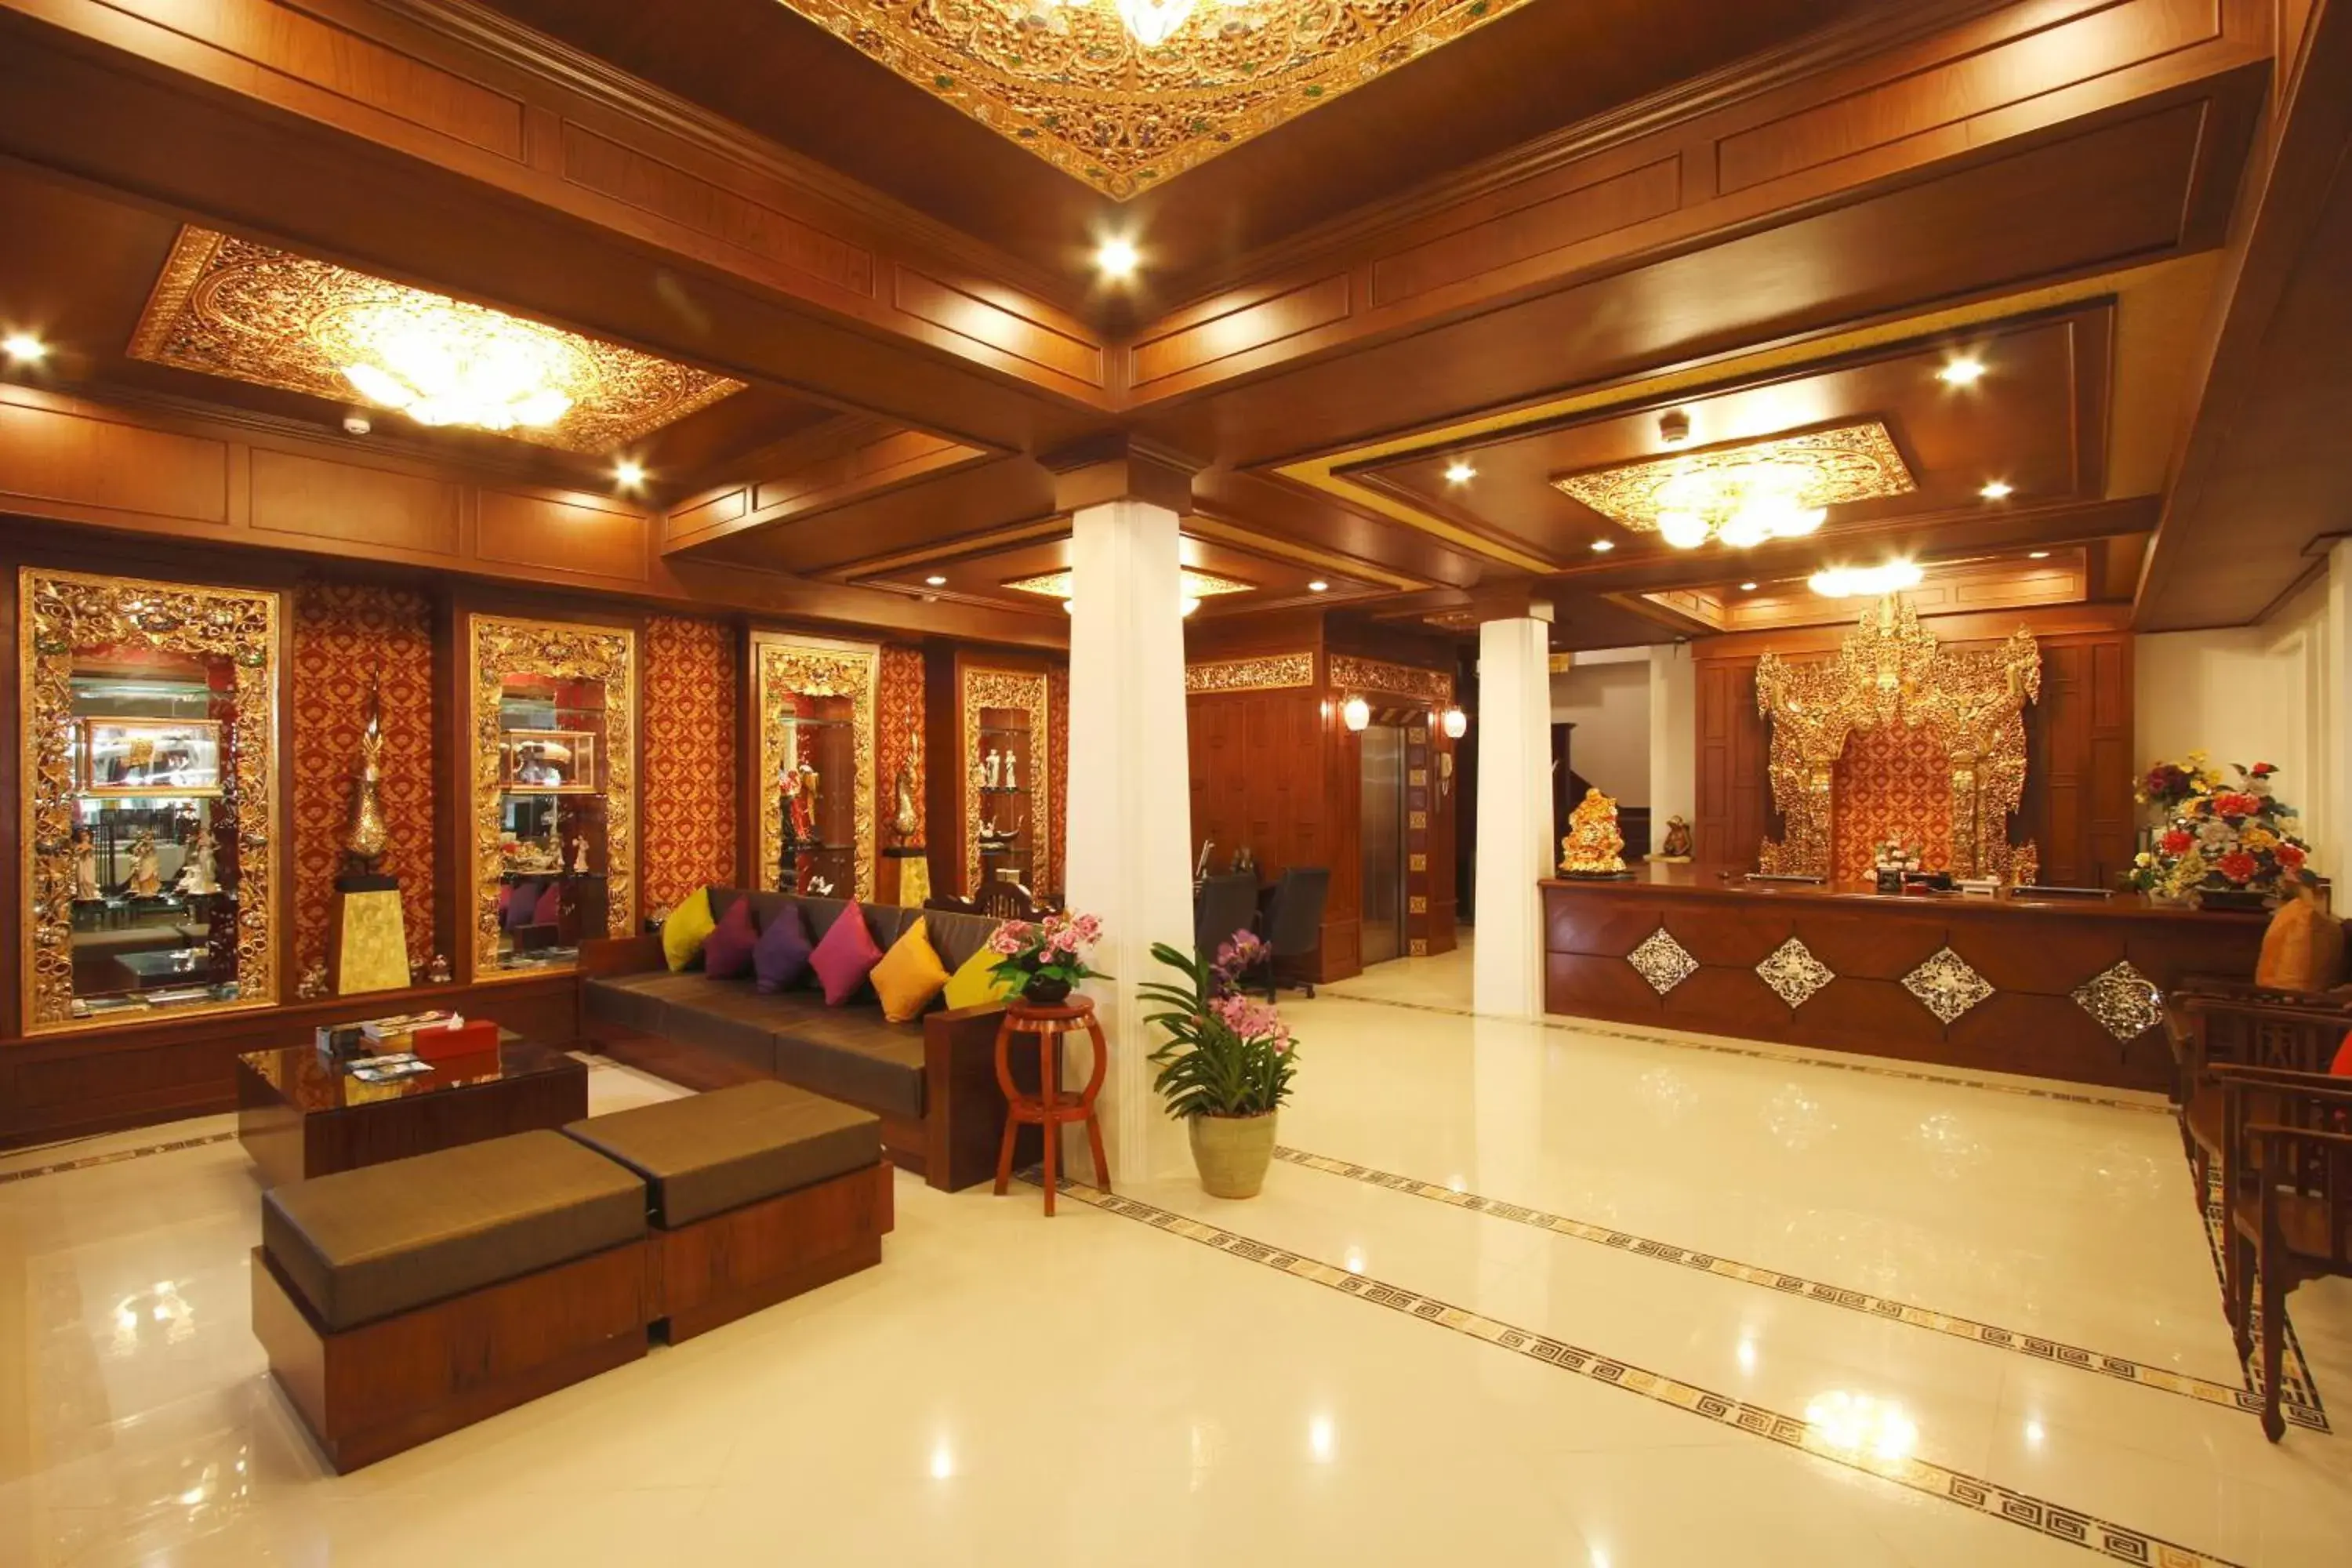 Lobby or reception, Lobby/Reception in Rayaburi Hotel, Patong